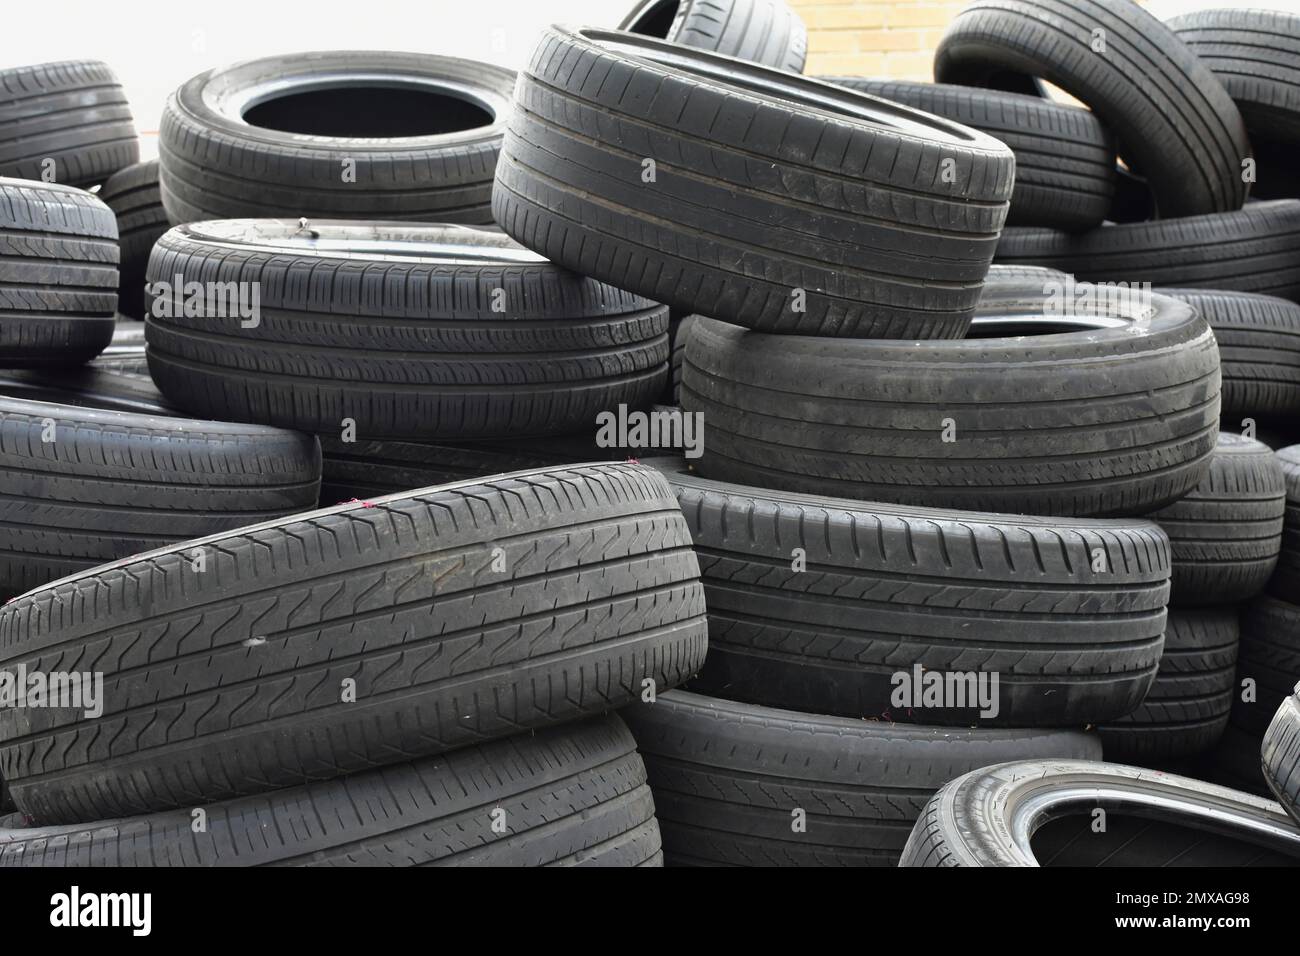 Entsorgen Sie Reifen auf einem Haufen, der recycelbar ist. Stockfoto